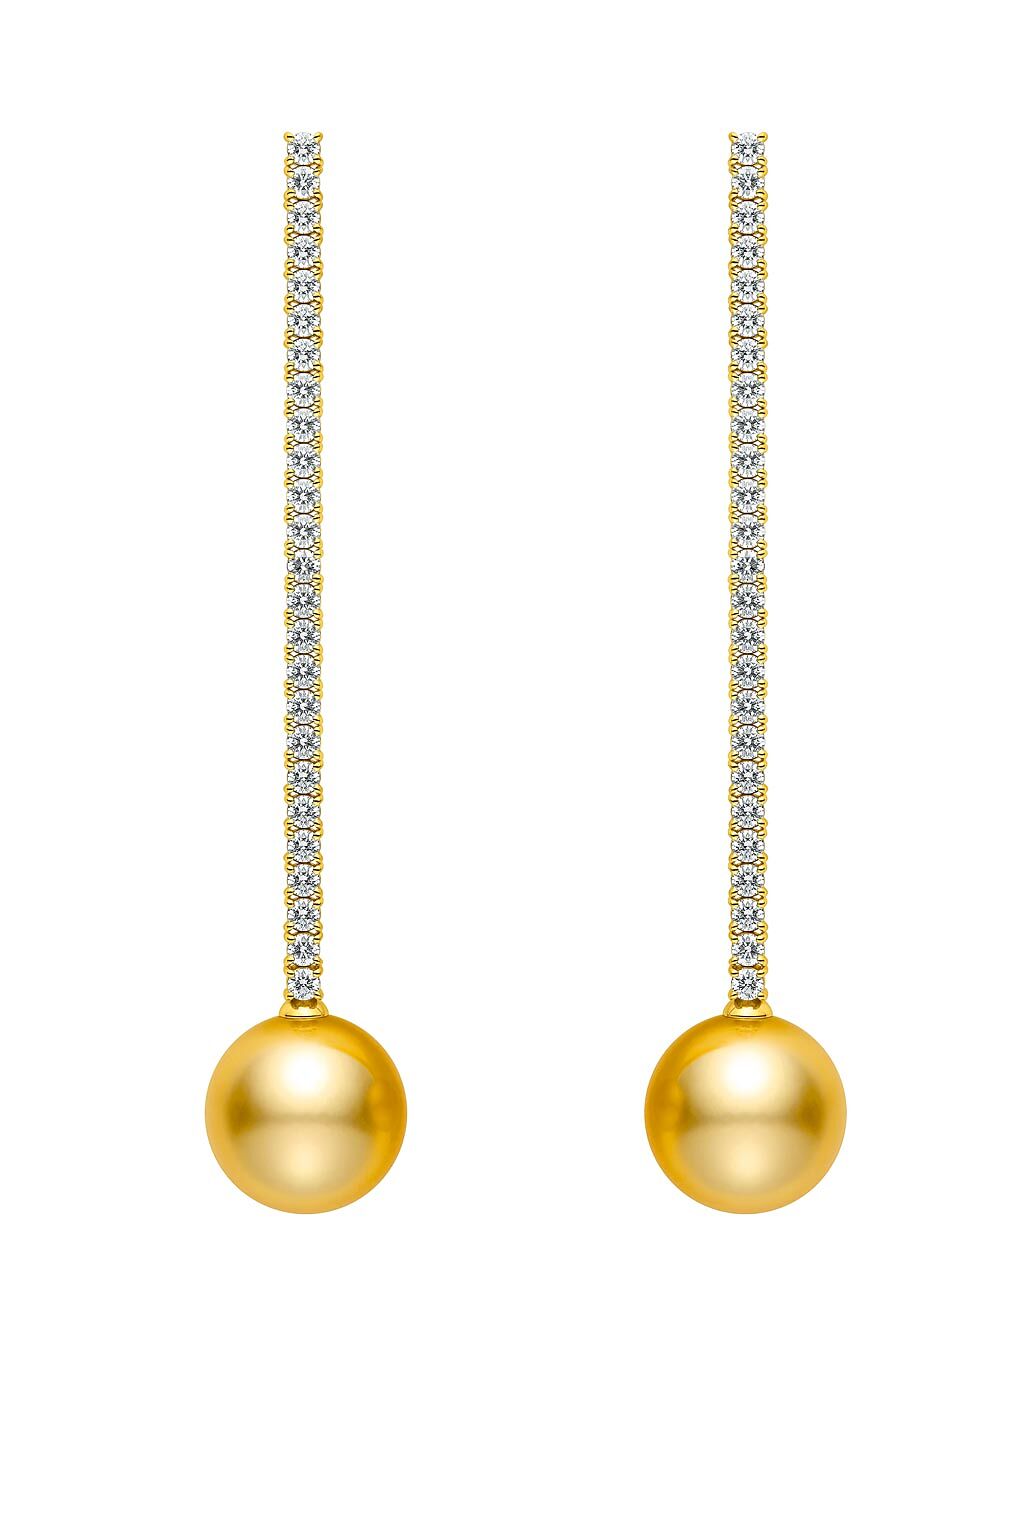 MIKIMOTO今年新品垂墜南洋黃金珍珠鑽石耳環，珍珠約12至12.99mm，約50萬元。（MIKIMOTO提供）